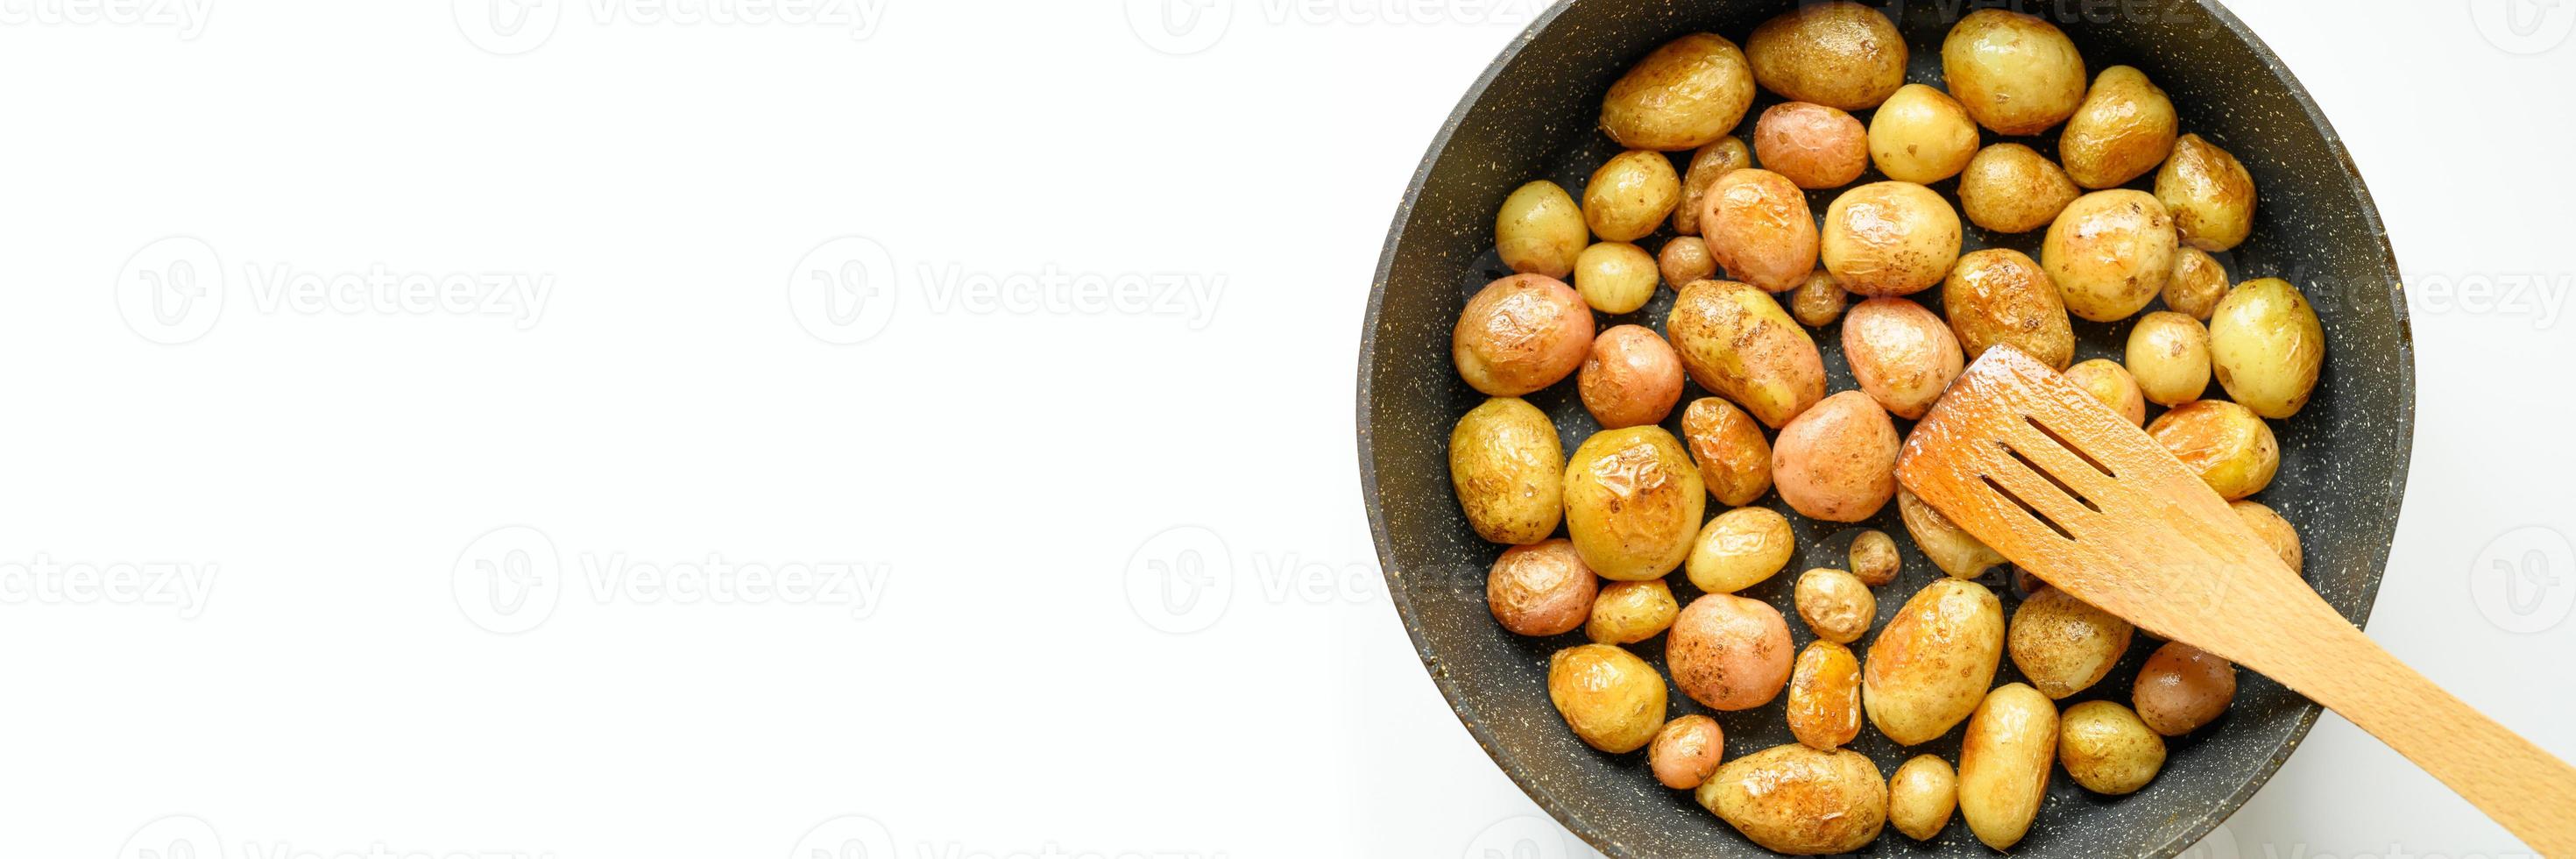 pommes de terre rôties dorées dans la peau photo